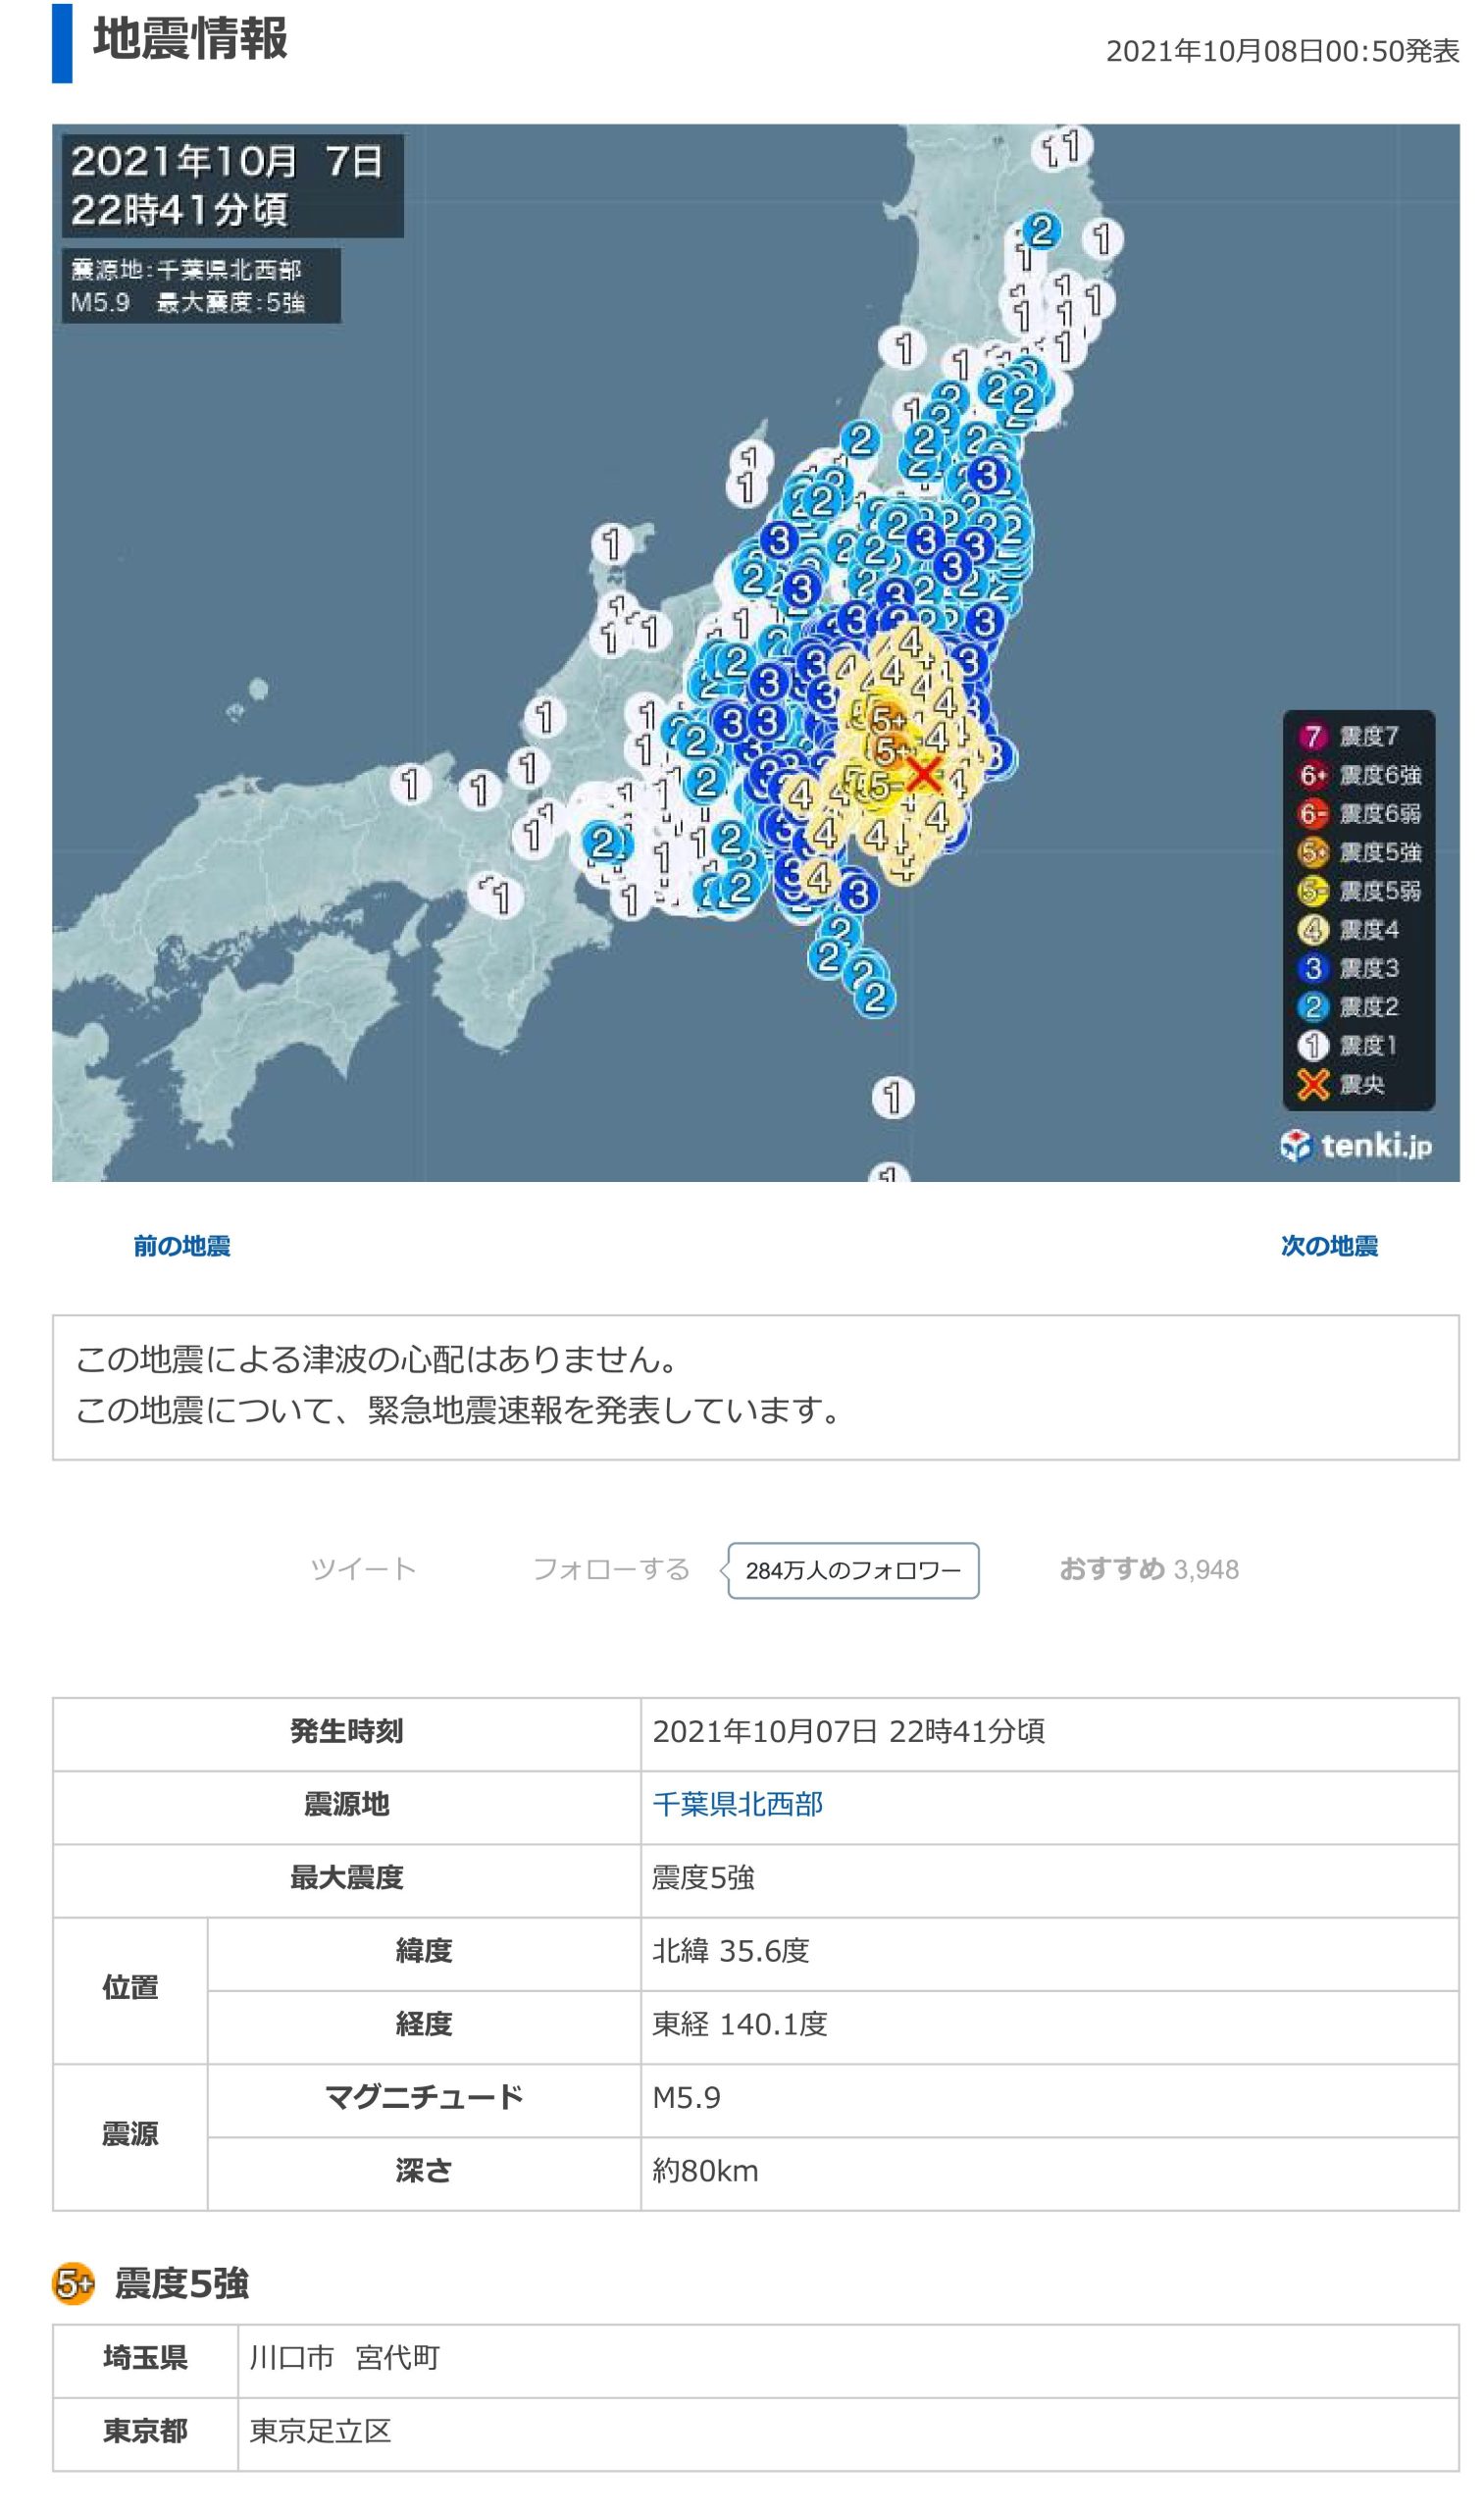 地震データ